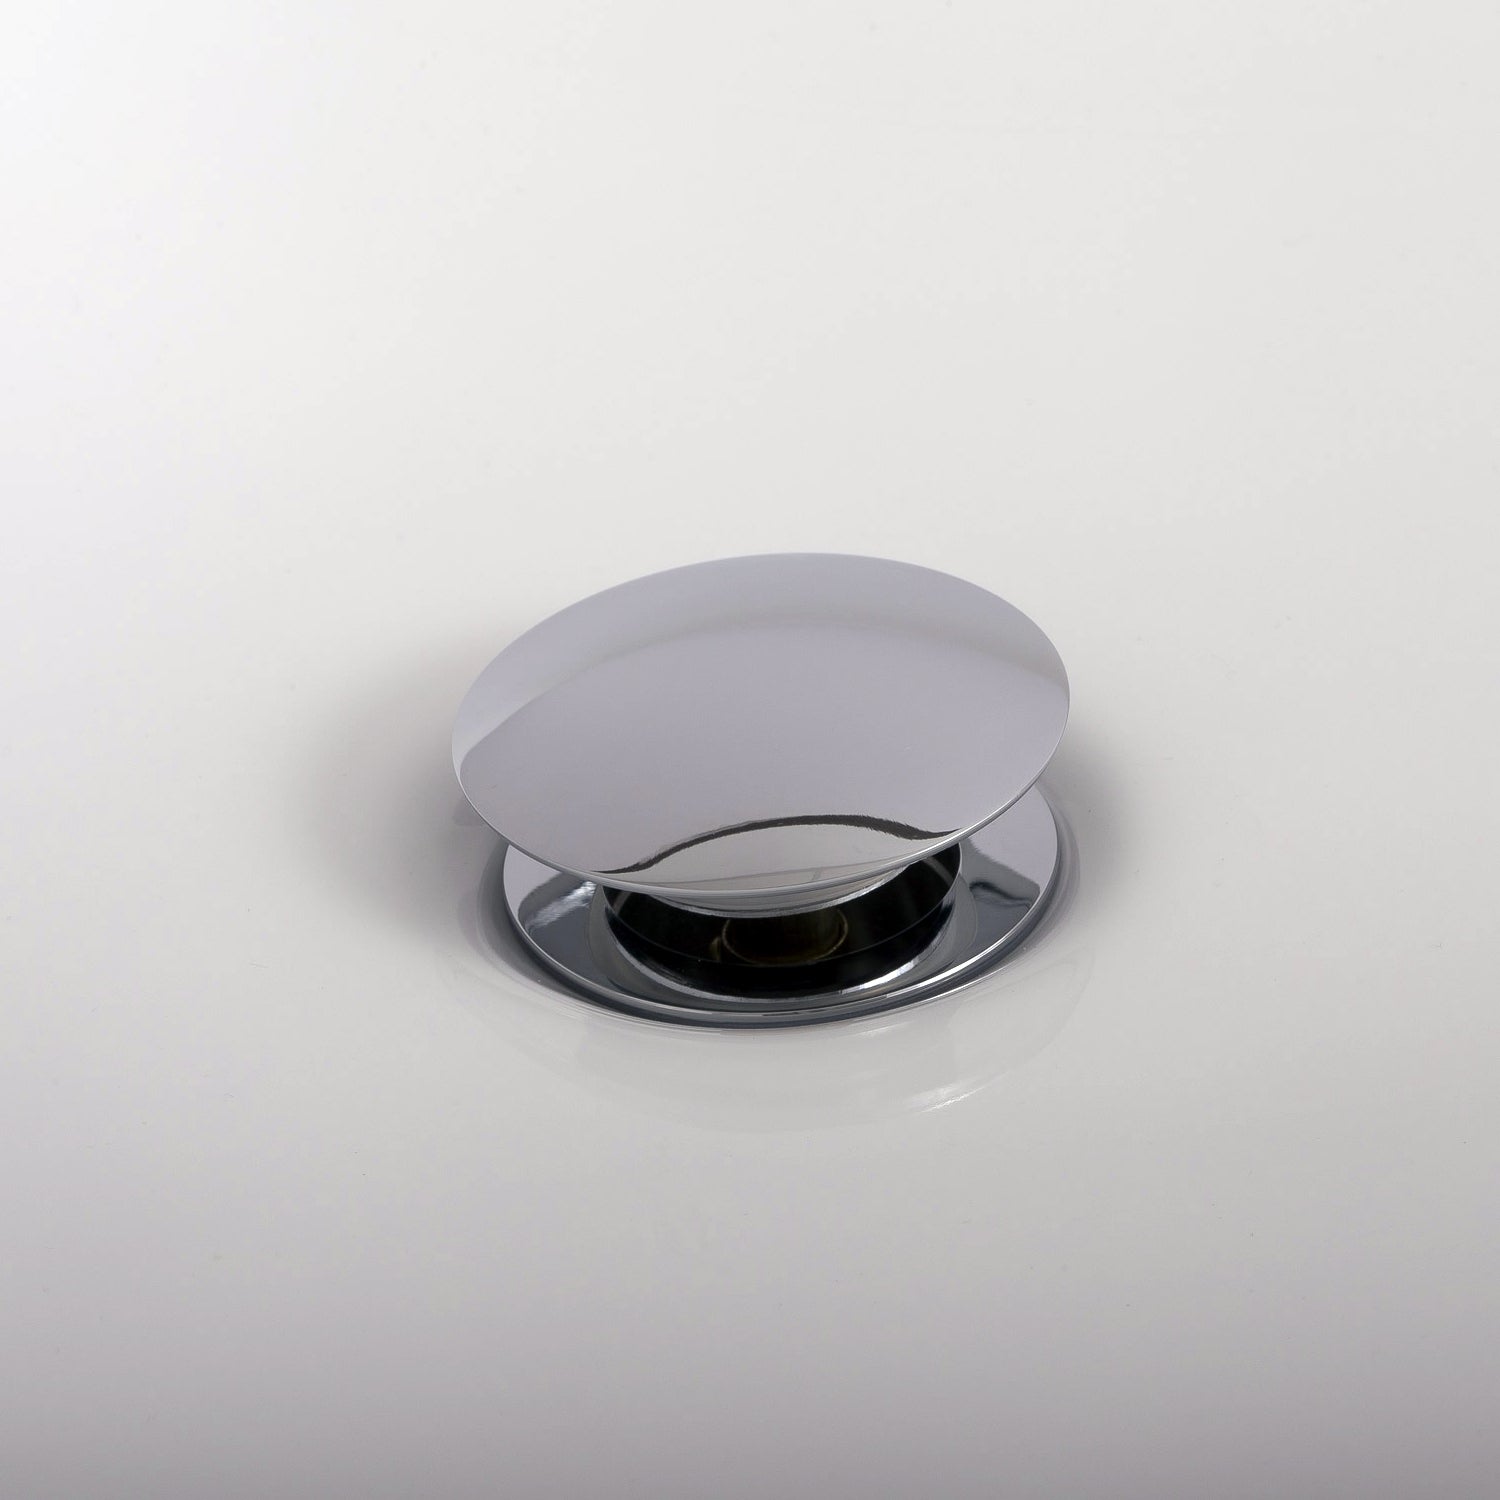 DAX Round Vanity Sink Pop up Drain, Brass Body, 2-5/8 x 8-5/8 Inches (DAX-82005-BN)